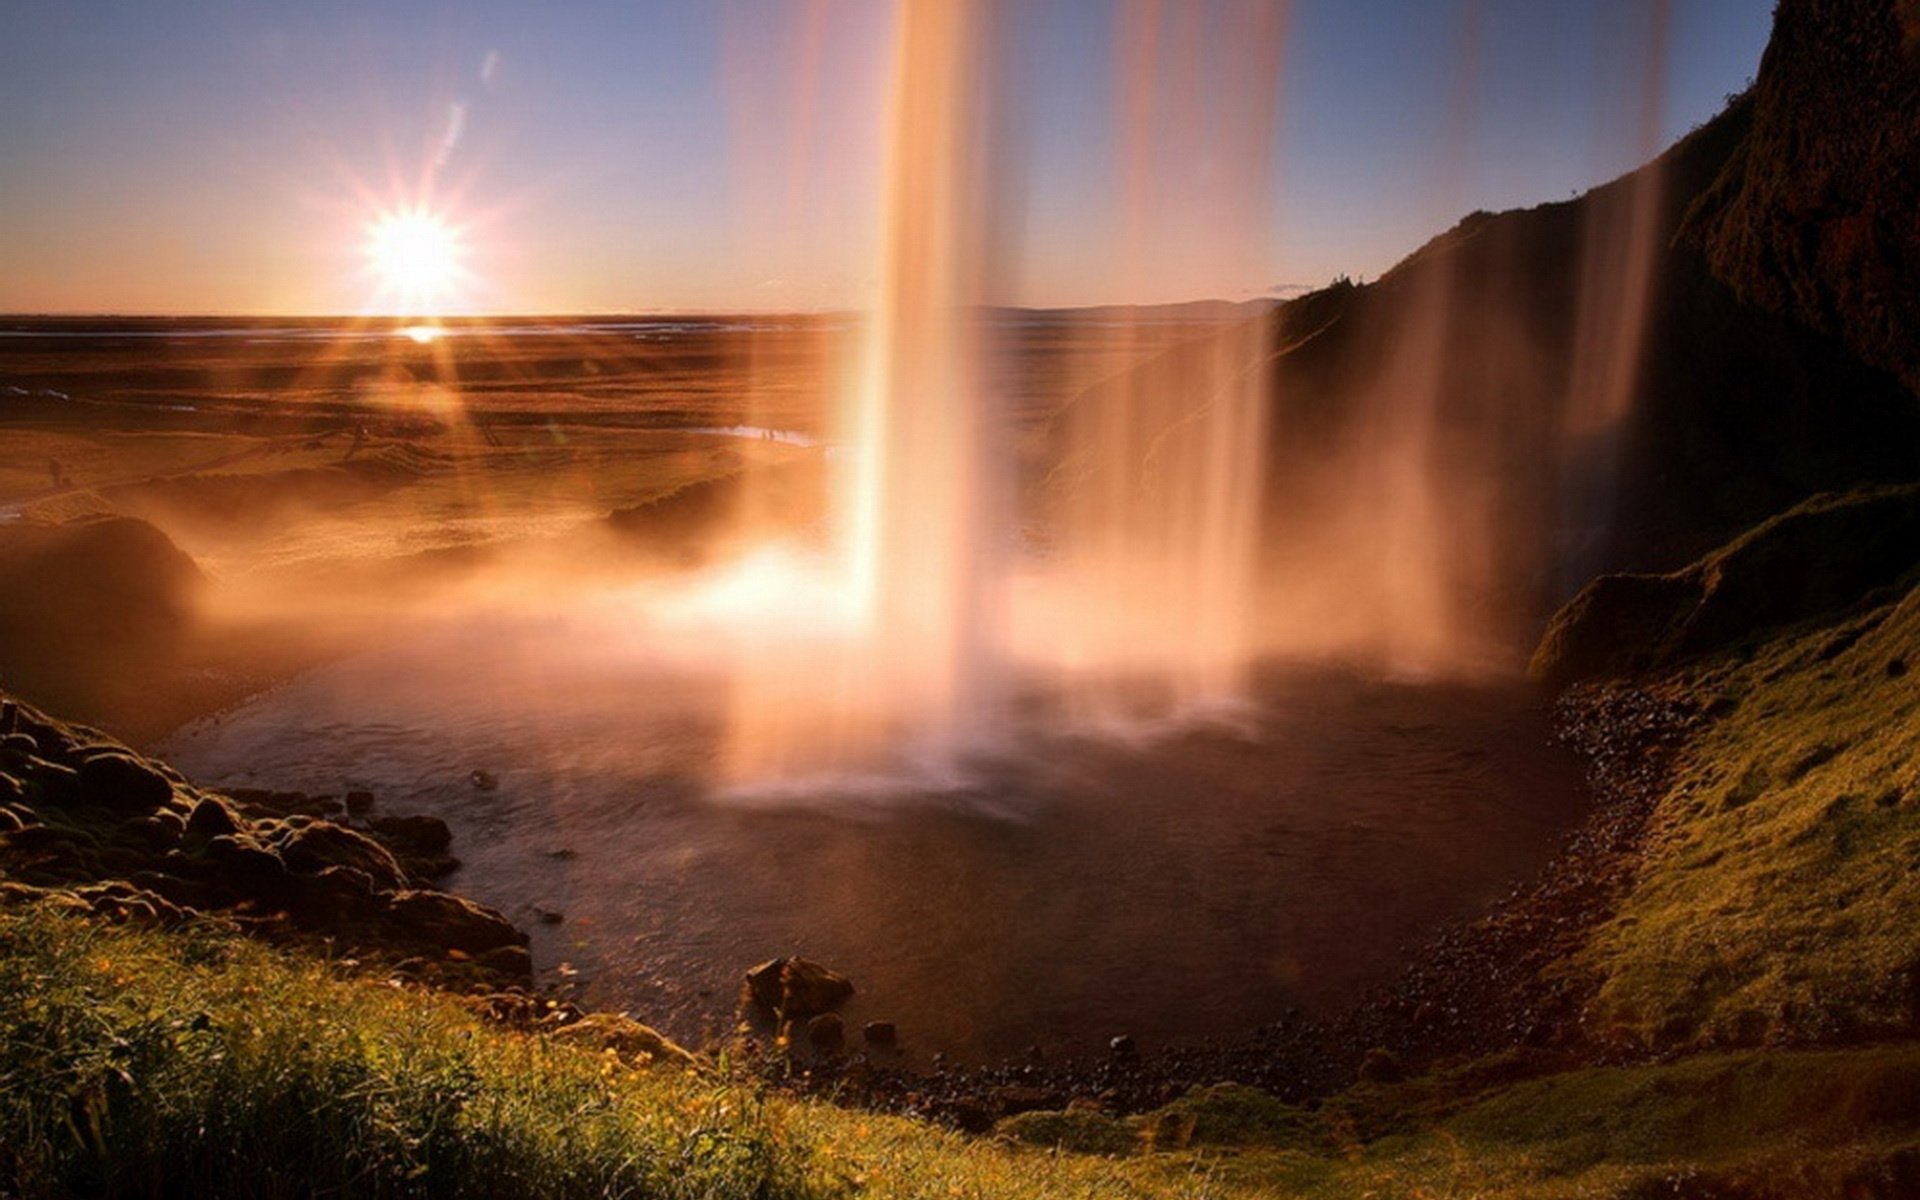 Невероятное красивое видео. Водопад Годафосс, Исландия. Пейзажи Джеймса Эпплтона. Водопад Сельяландсфосс, Исландия закат. Удивительные пейзажи.